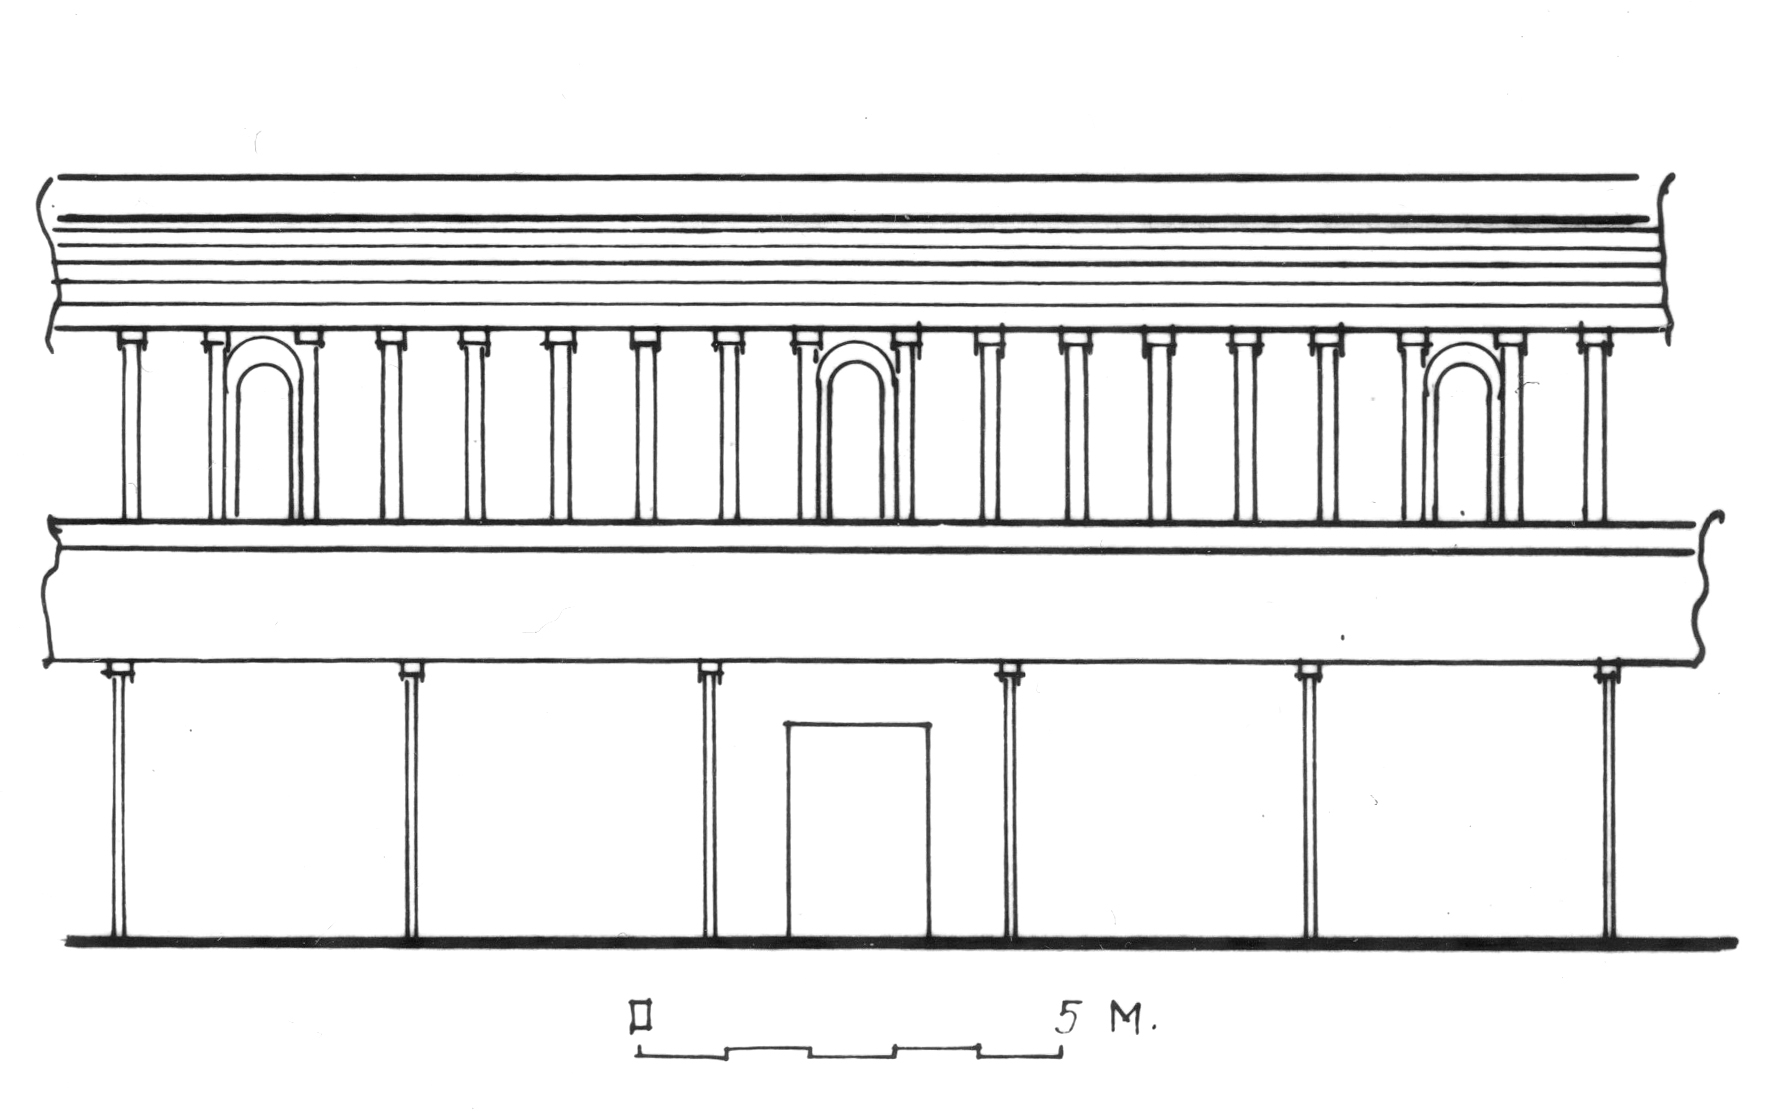 Արտաքին պատի ներքին հարթությունը տաճարի առաջին և երկրորդ աստիճանների սահմաններում (վերակազմություն)